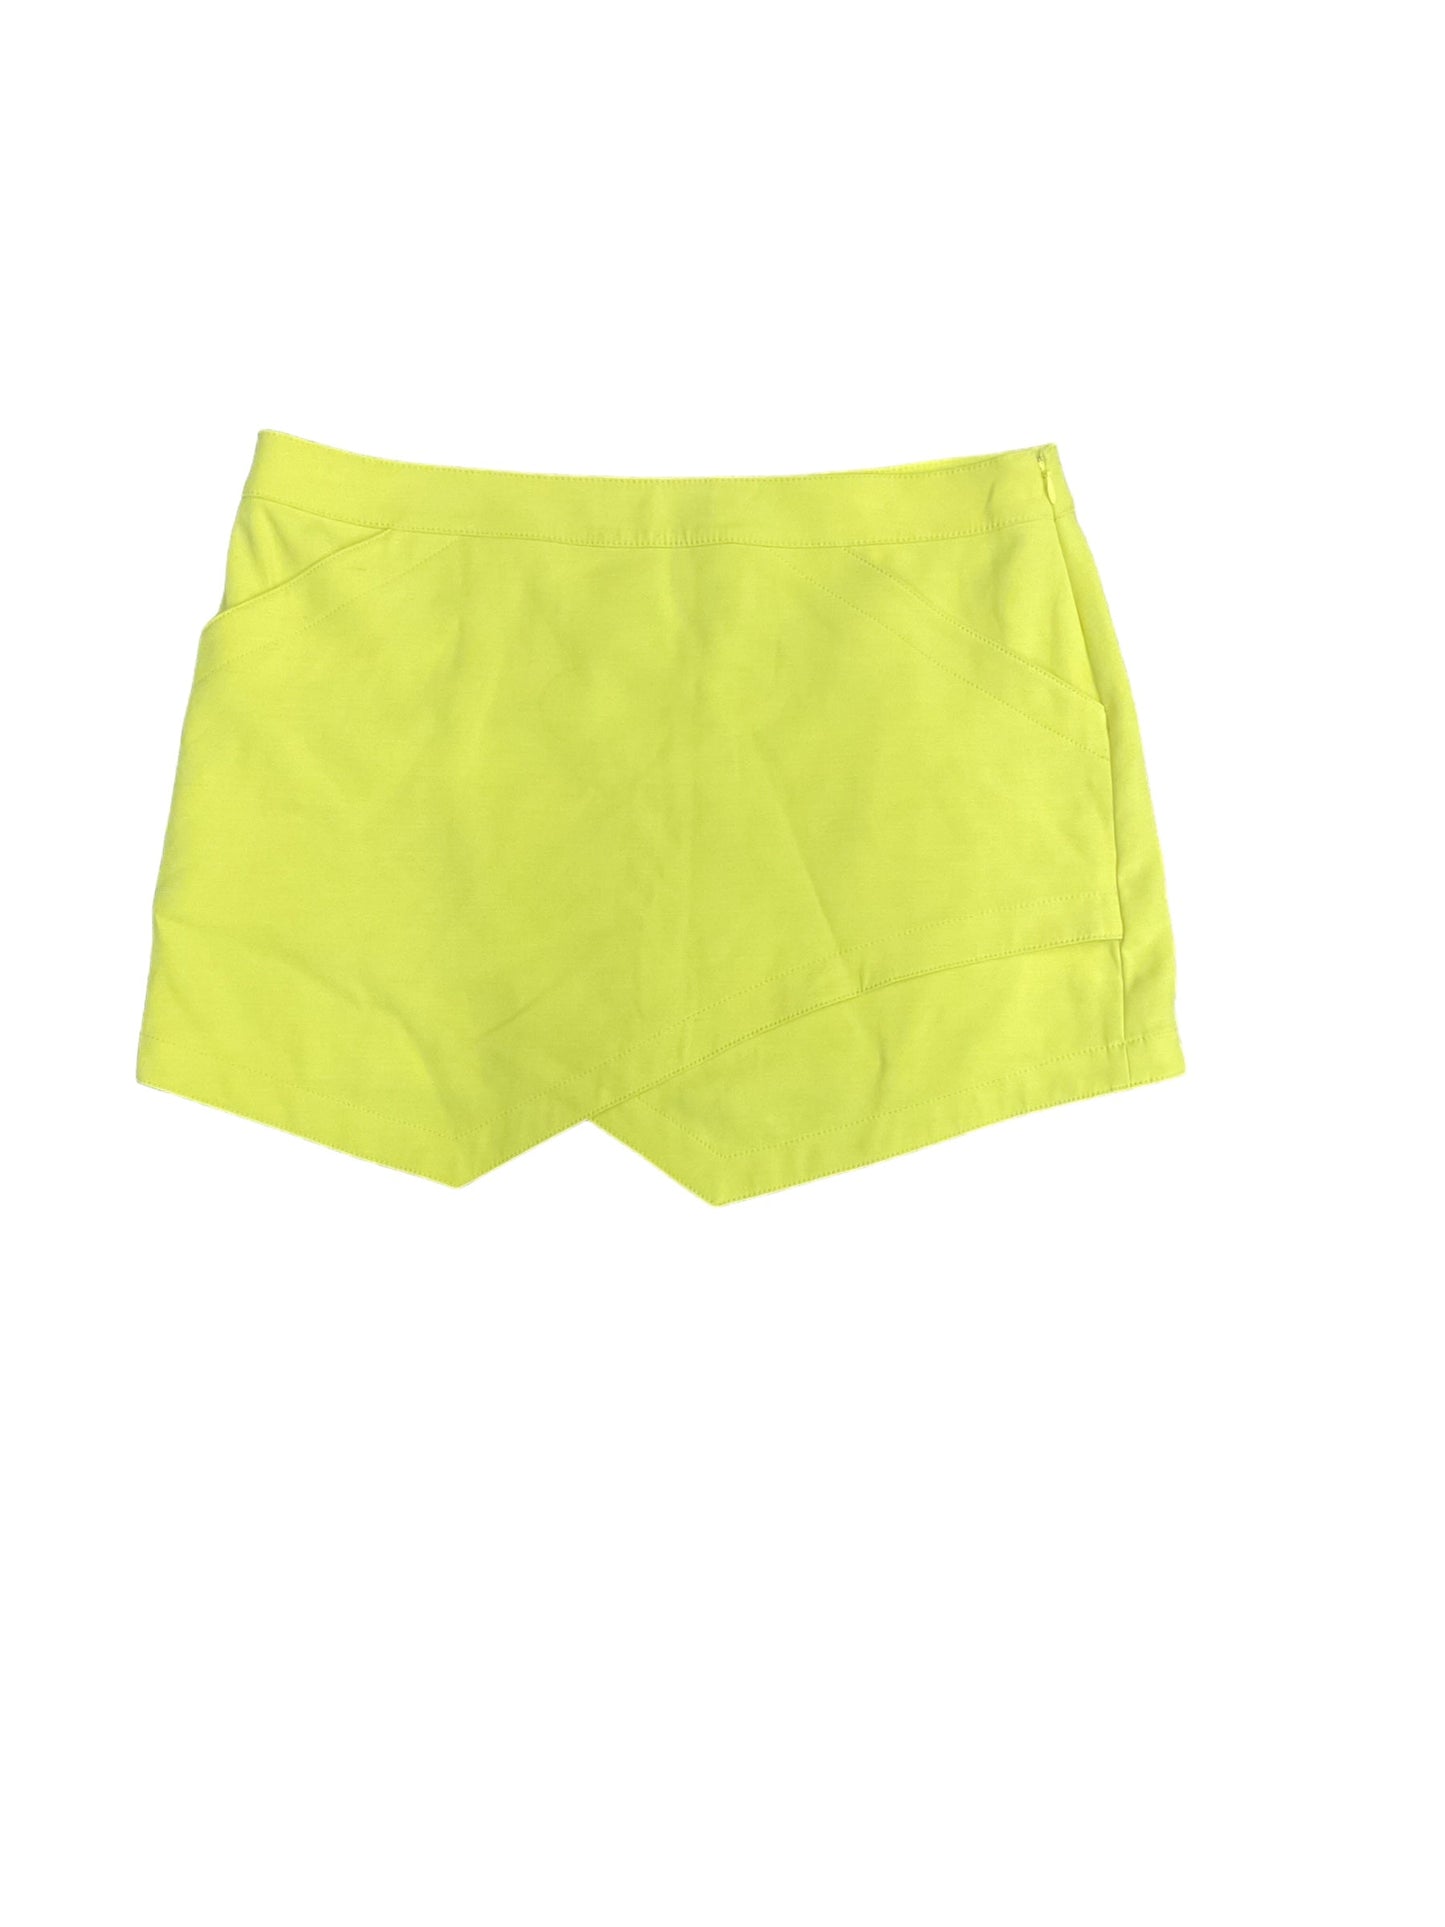 Yellow Skirt Mini & Short Bcbgmaxazria, Size L